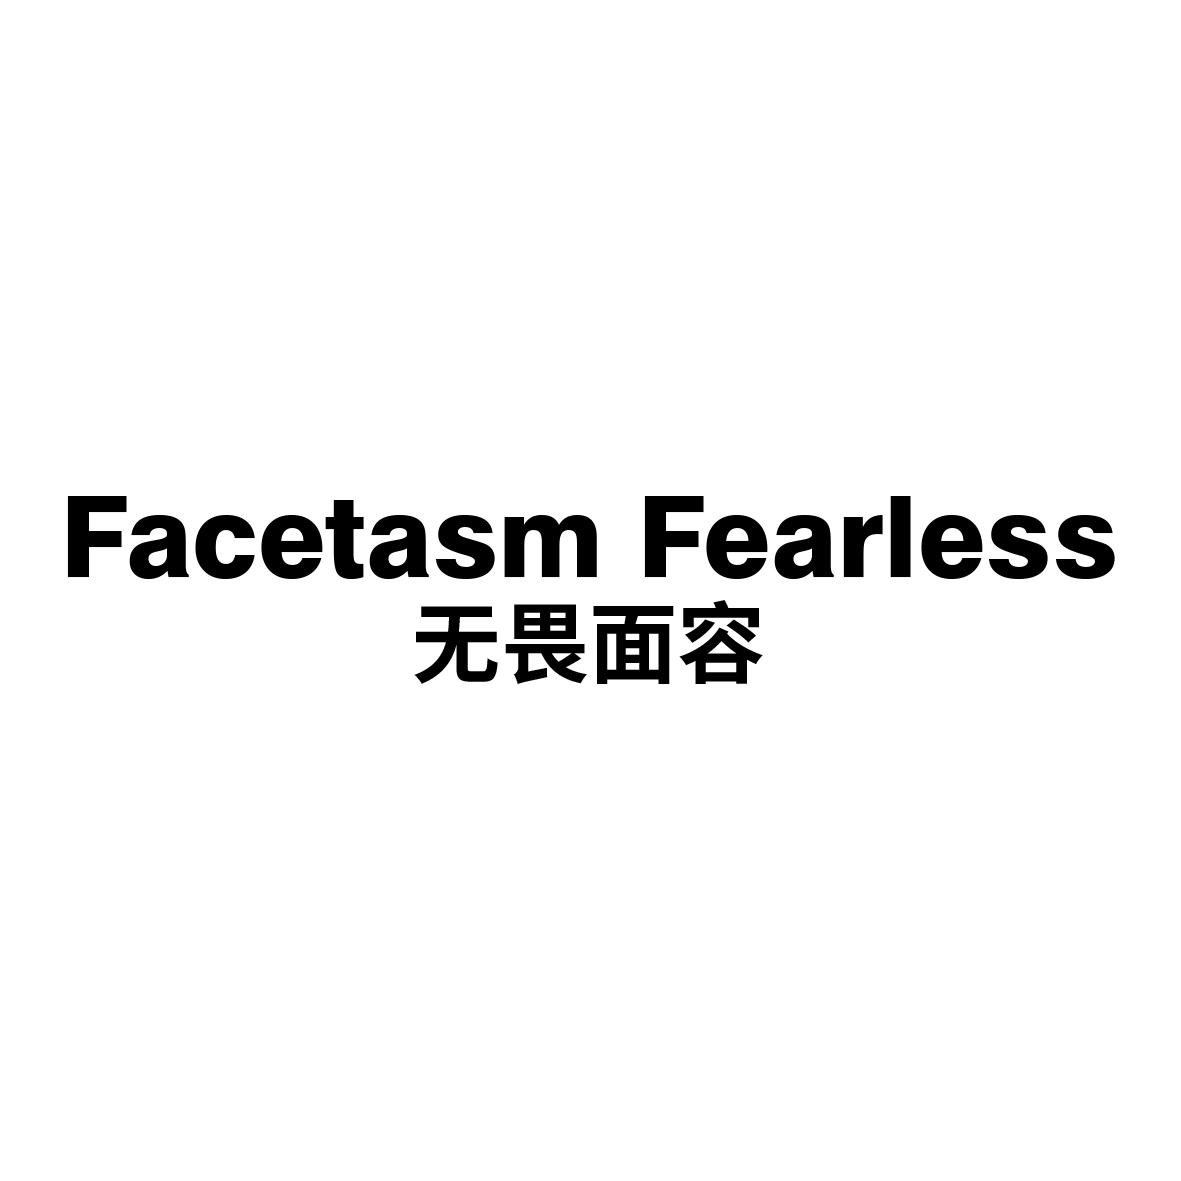 无畏面容 Facetasm Fearless